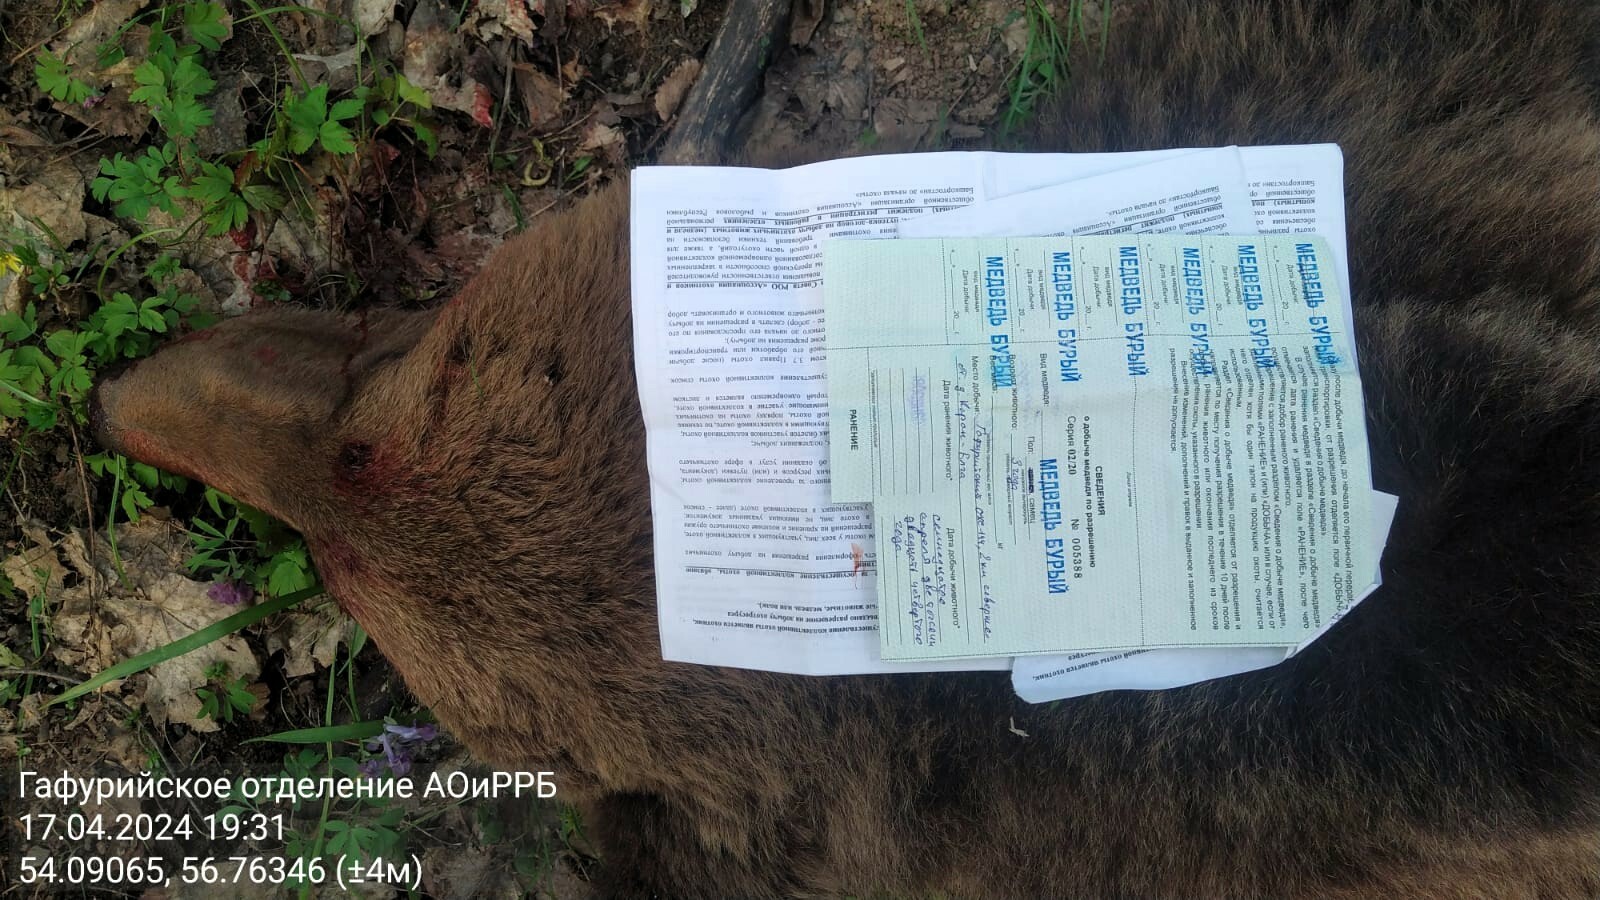 Тревога в Каран-Елге: медведь-нарушитель потревожил покой местных жителей, накинувшись на КРС